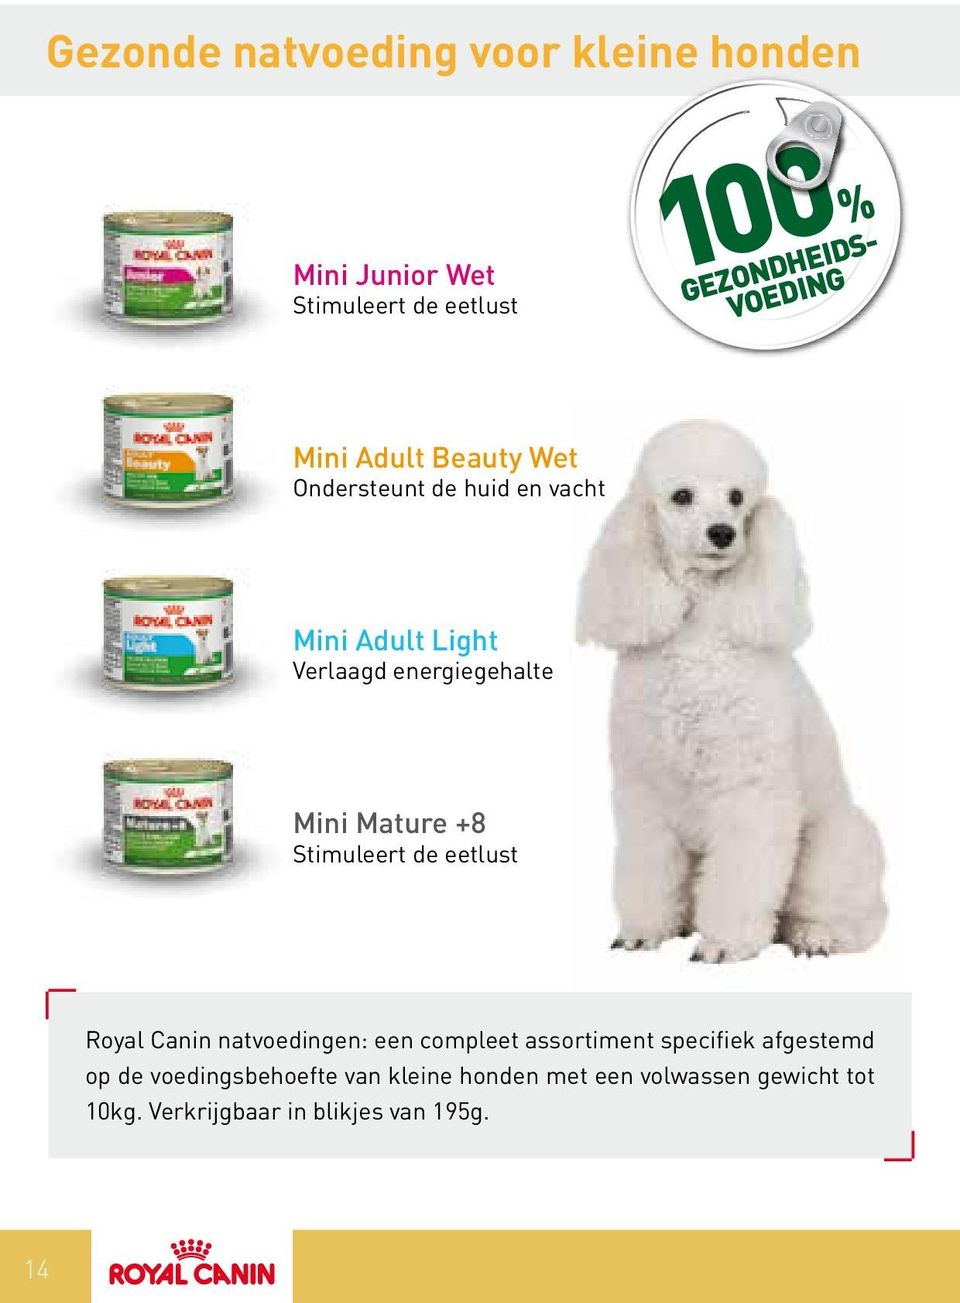 +8 Stimuleert de eetlust Royal Canin natvoedingen: een compleet assortiment specifiek afgestemd op de